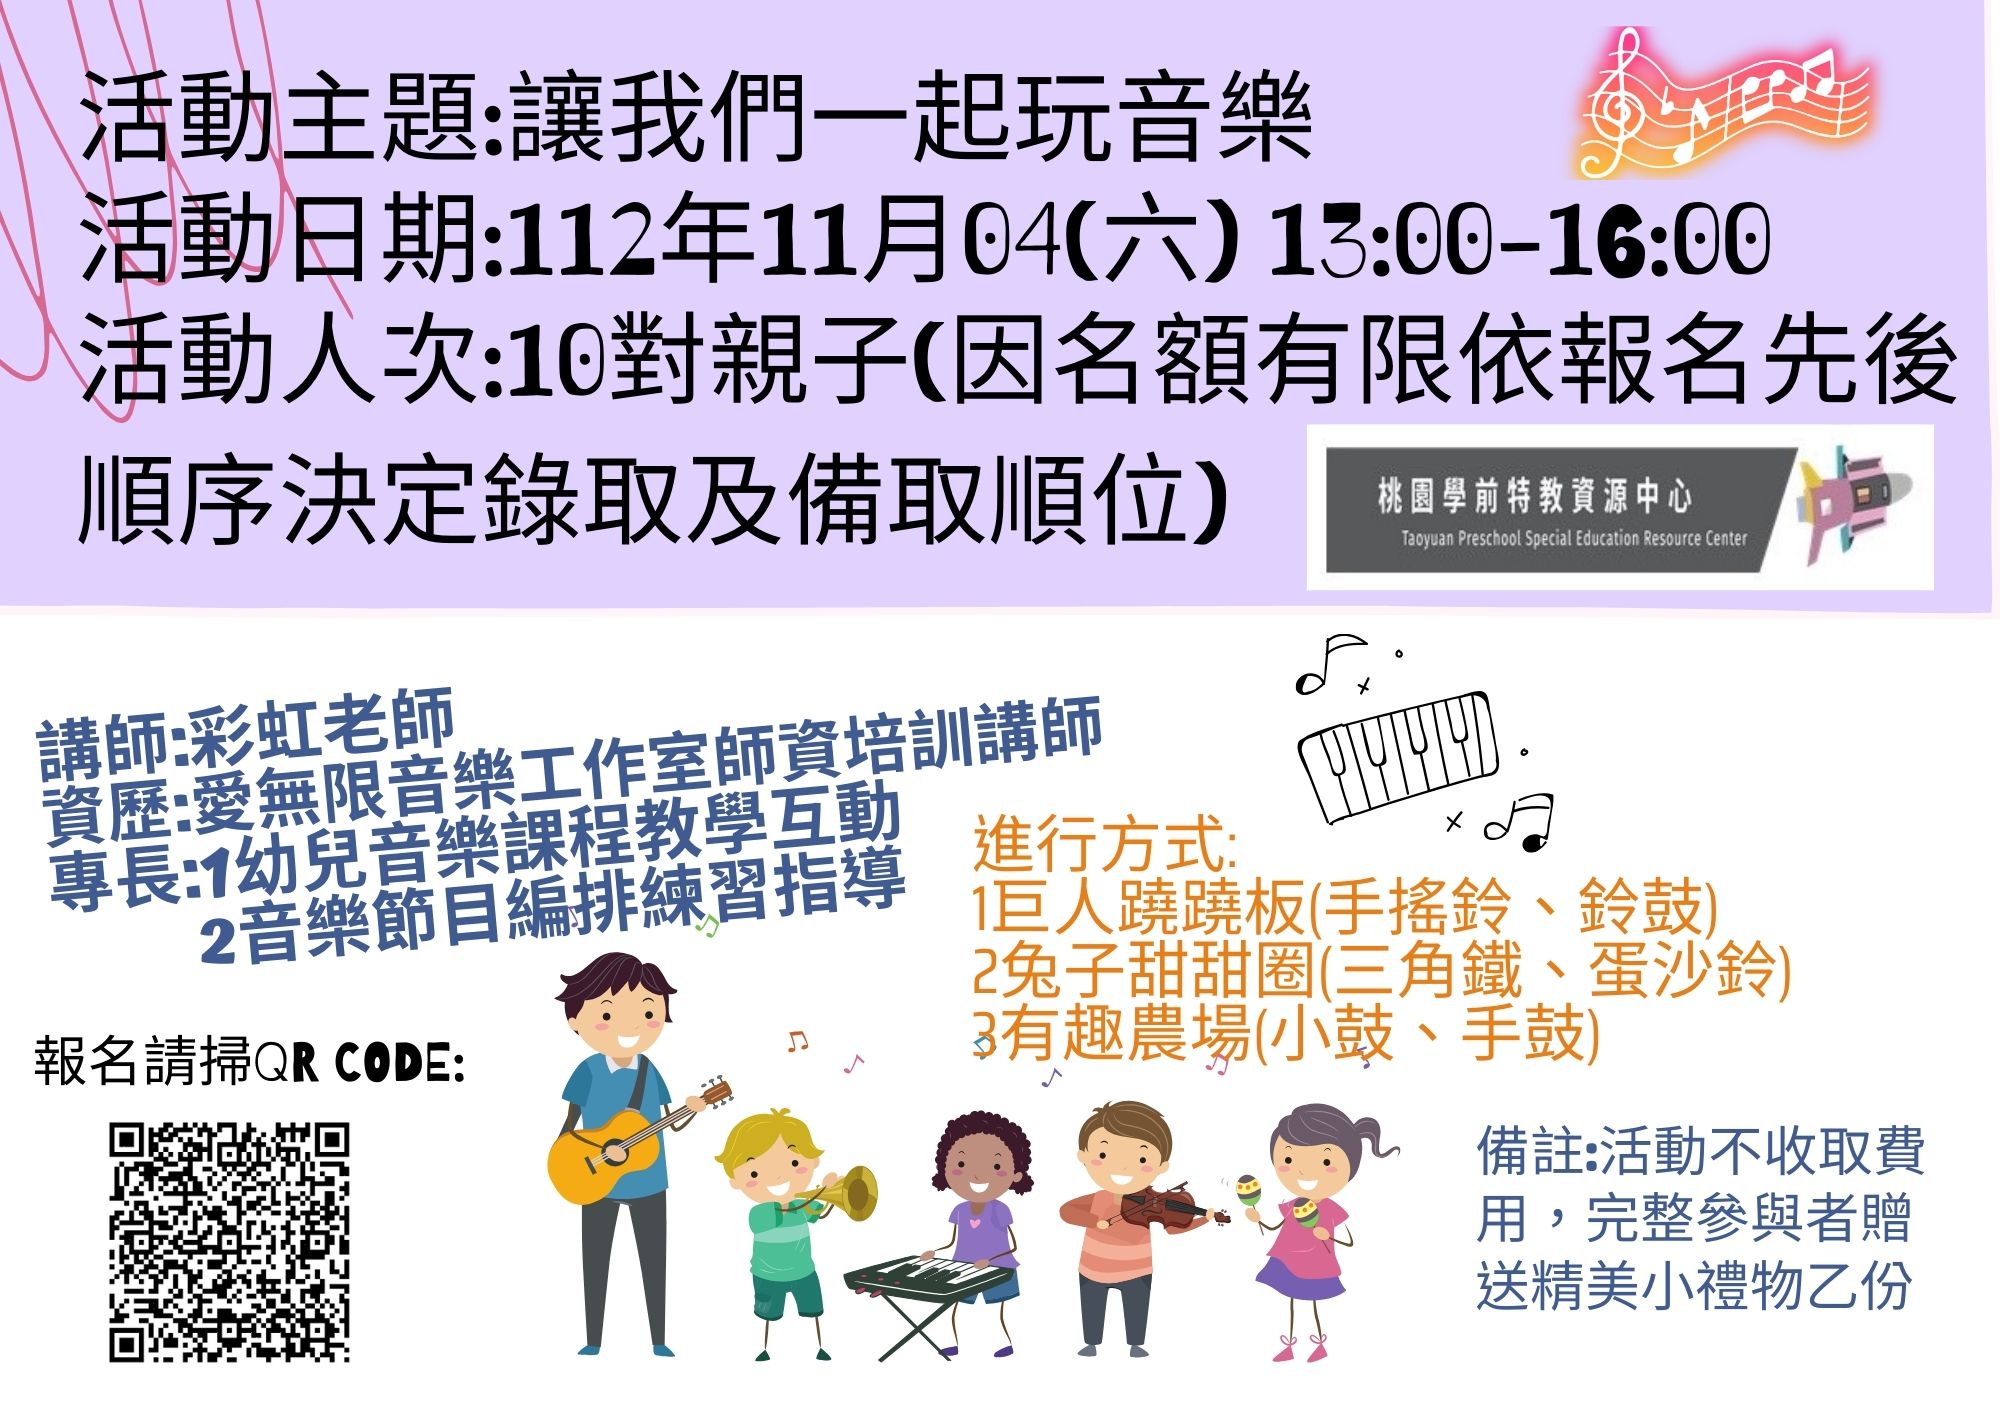 112年11月4日(六)學前社區教保中心親子活動 主題:[讓我們一起玩音樂]親子活動 歡迎報名參加~(已結束)